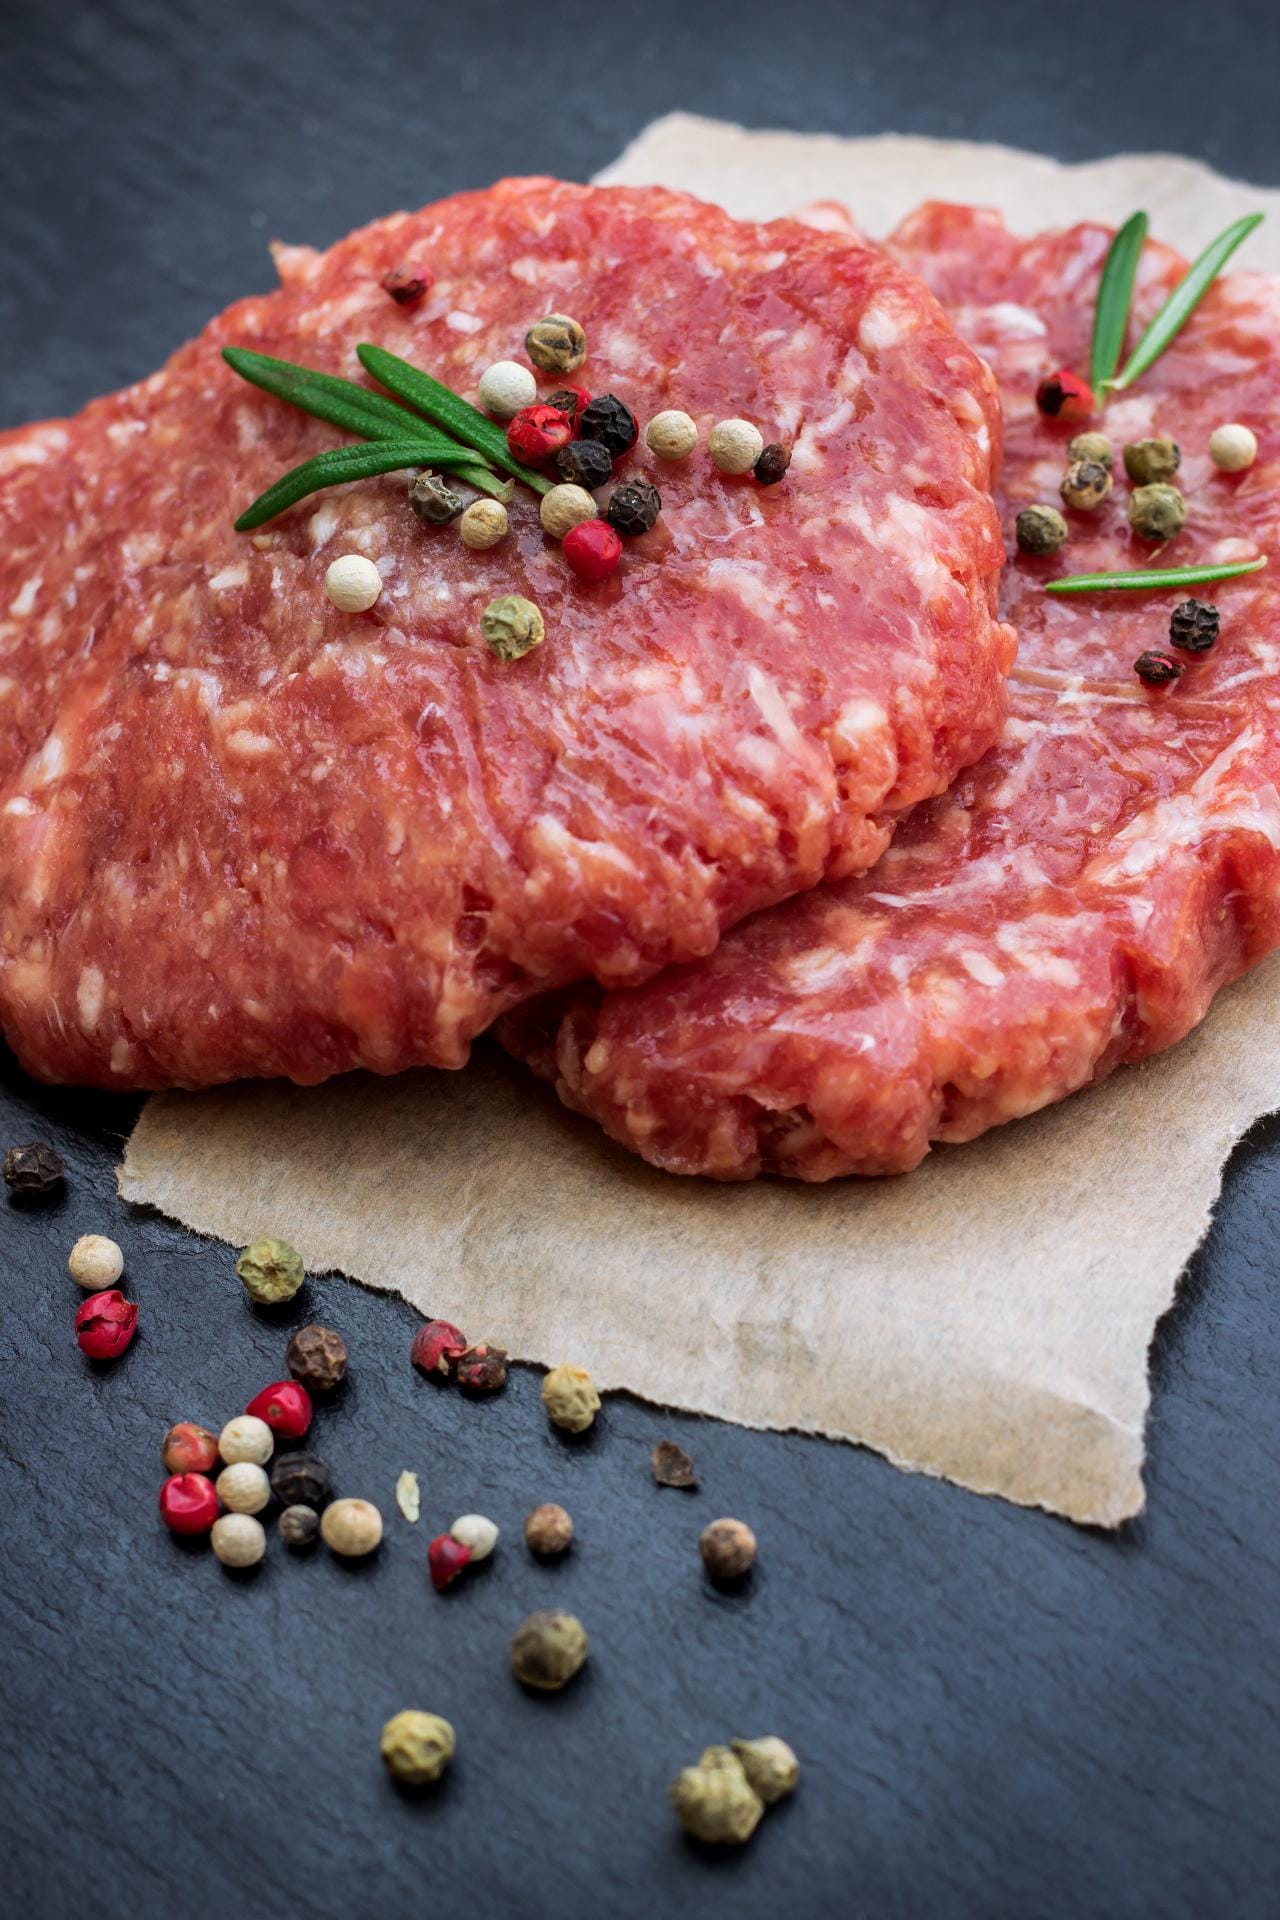 Darauf kommt's an: Frisches Top-Rindfleisch prägt den Geschmack eines richtig guten Burgers – Saucen und Zutaten sollten ihn verstärken und nicht überdecken.